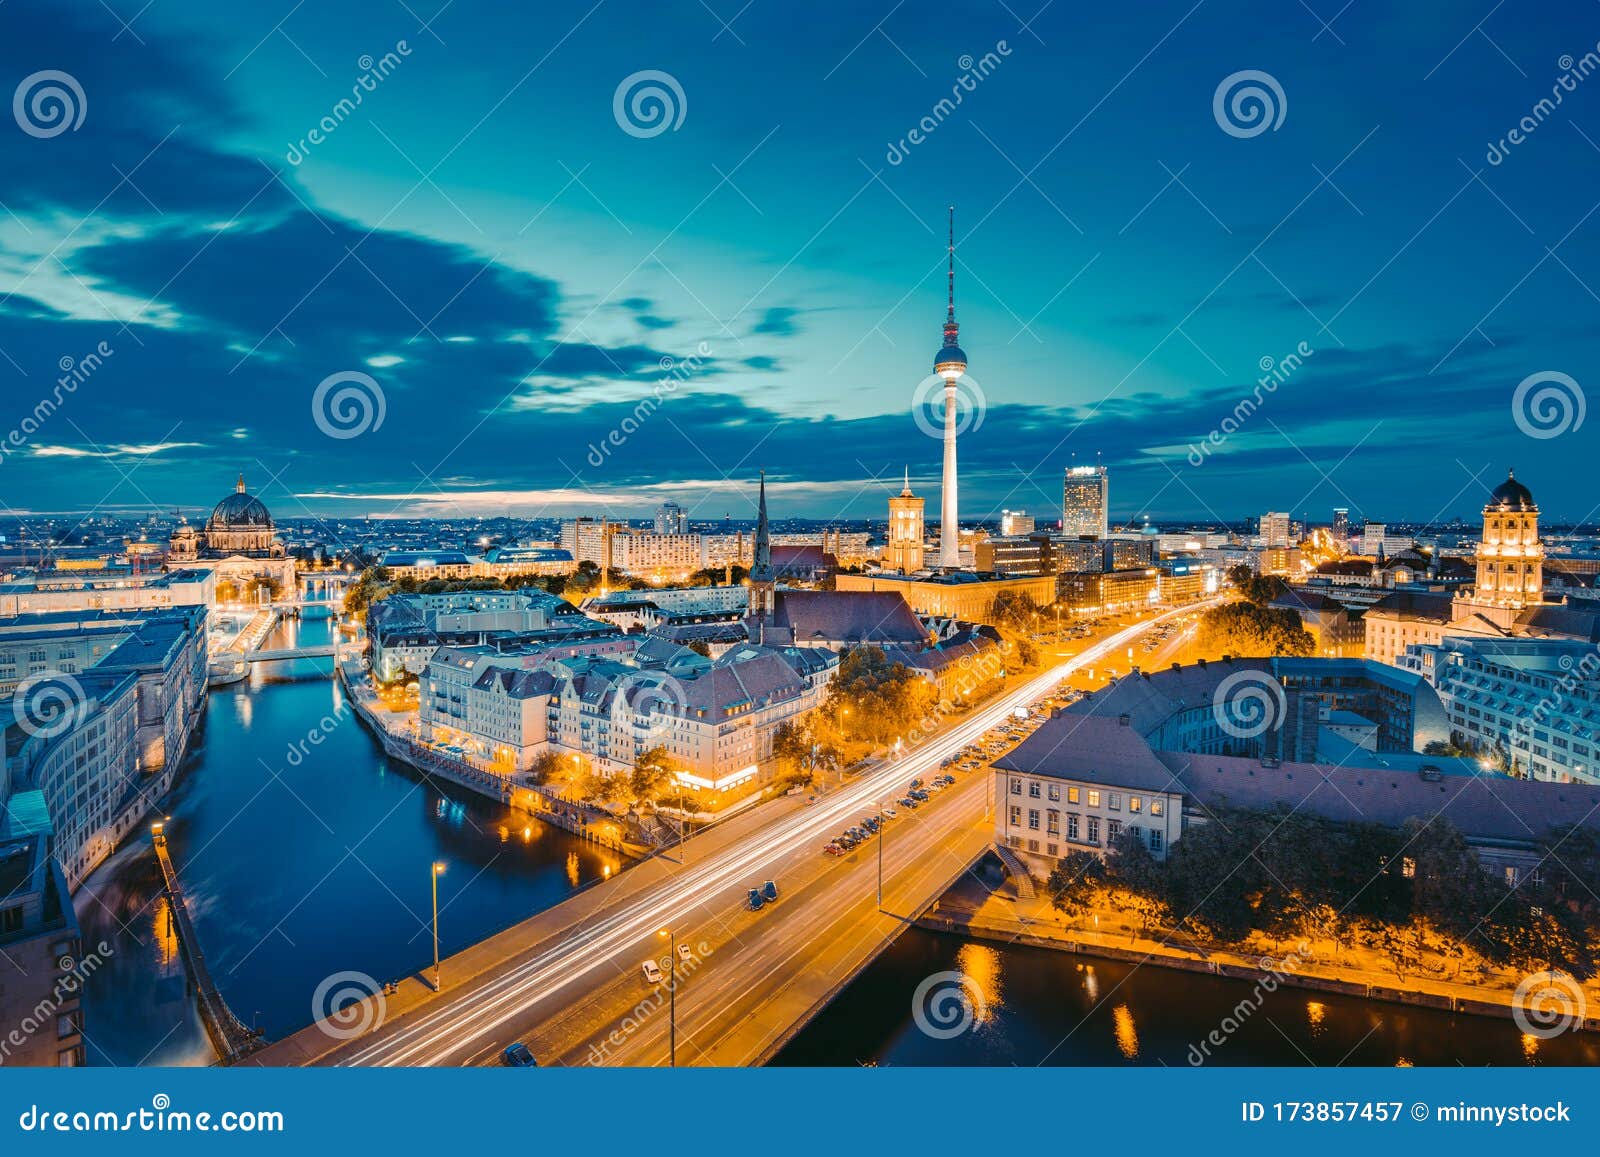 德国莱茵河上的日落桥梁和杜塞尔多夫市景 库存照片. 图片 包括有 五颜六色, 船舶, 都市风景, 德国 - 175141550